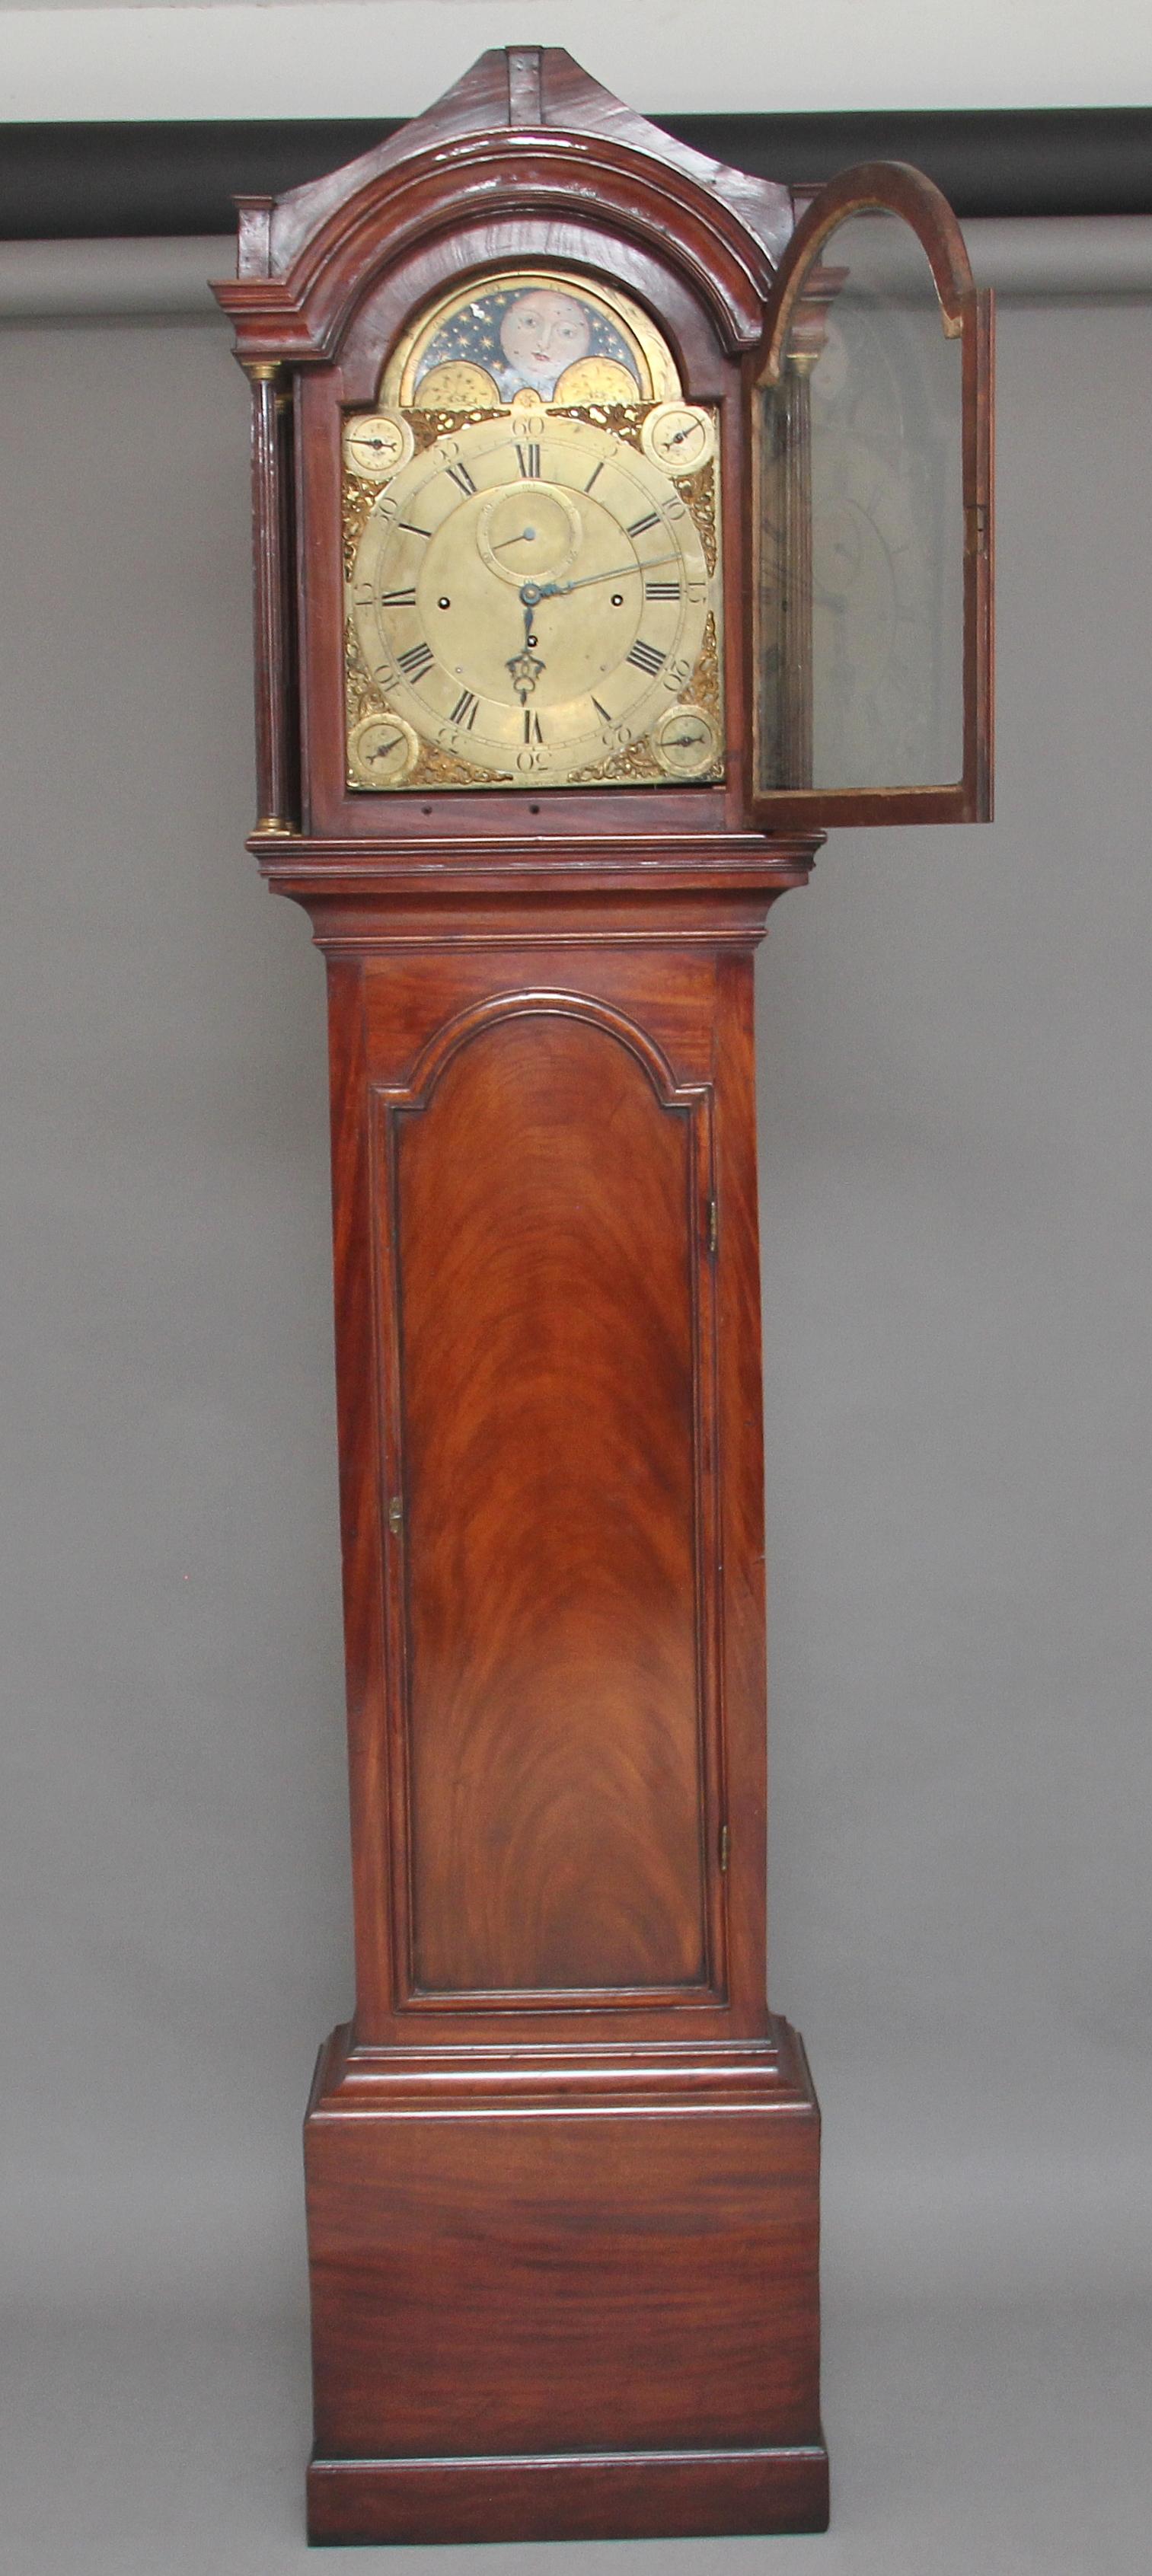 horloge de parquet en acajou du 18ème siècle par John Wood de Grantham (connu pour avoir travaillé de 1753 à 1797) une imposante horloge en acajou avec phase de lune, carillon de quart et fonctions jour/date. Le cadran en laiton comporte des